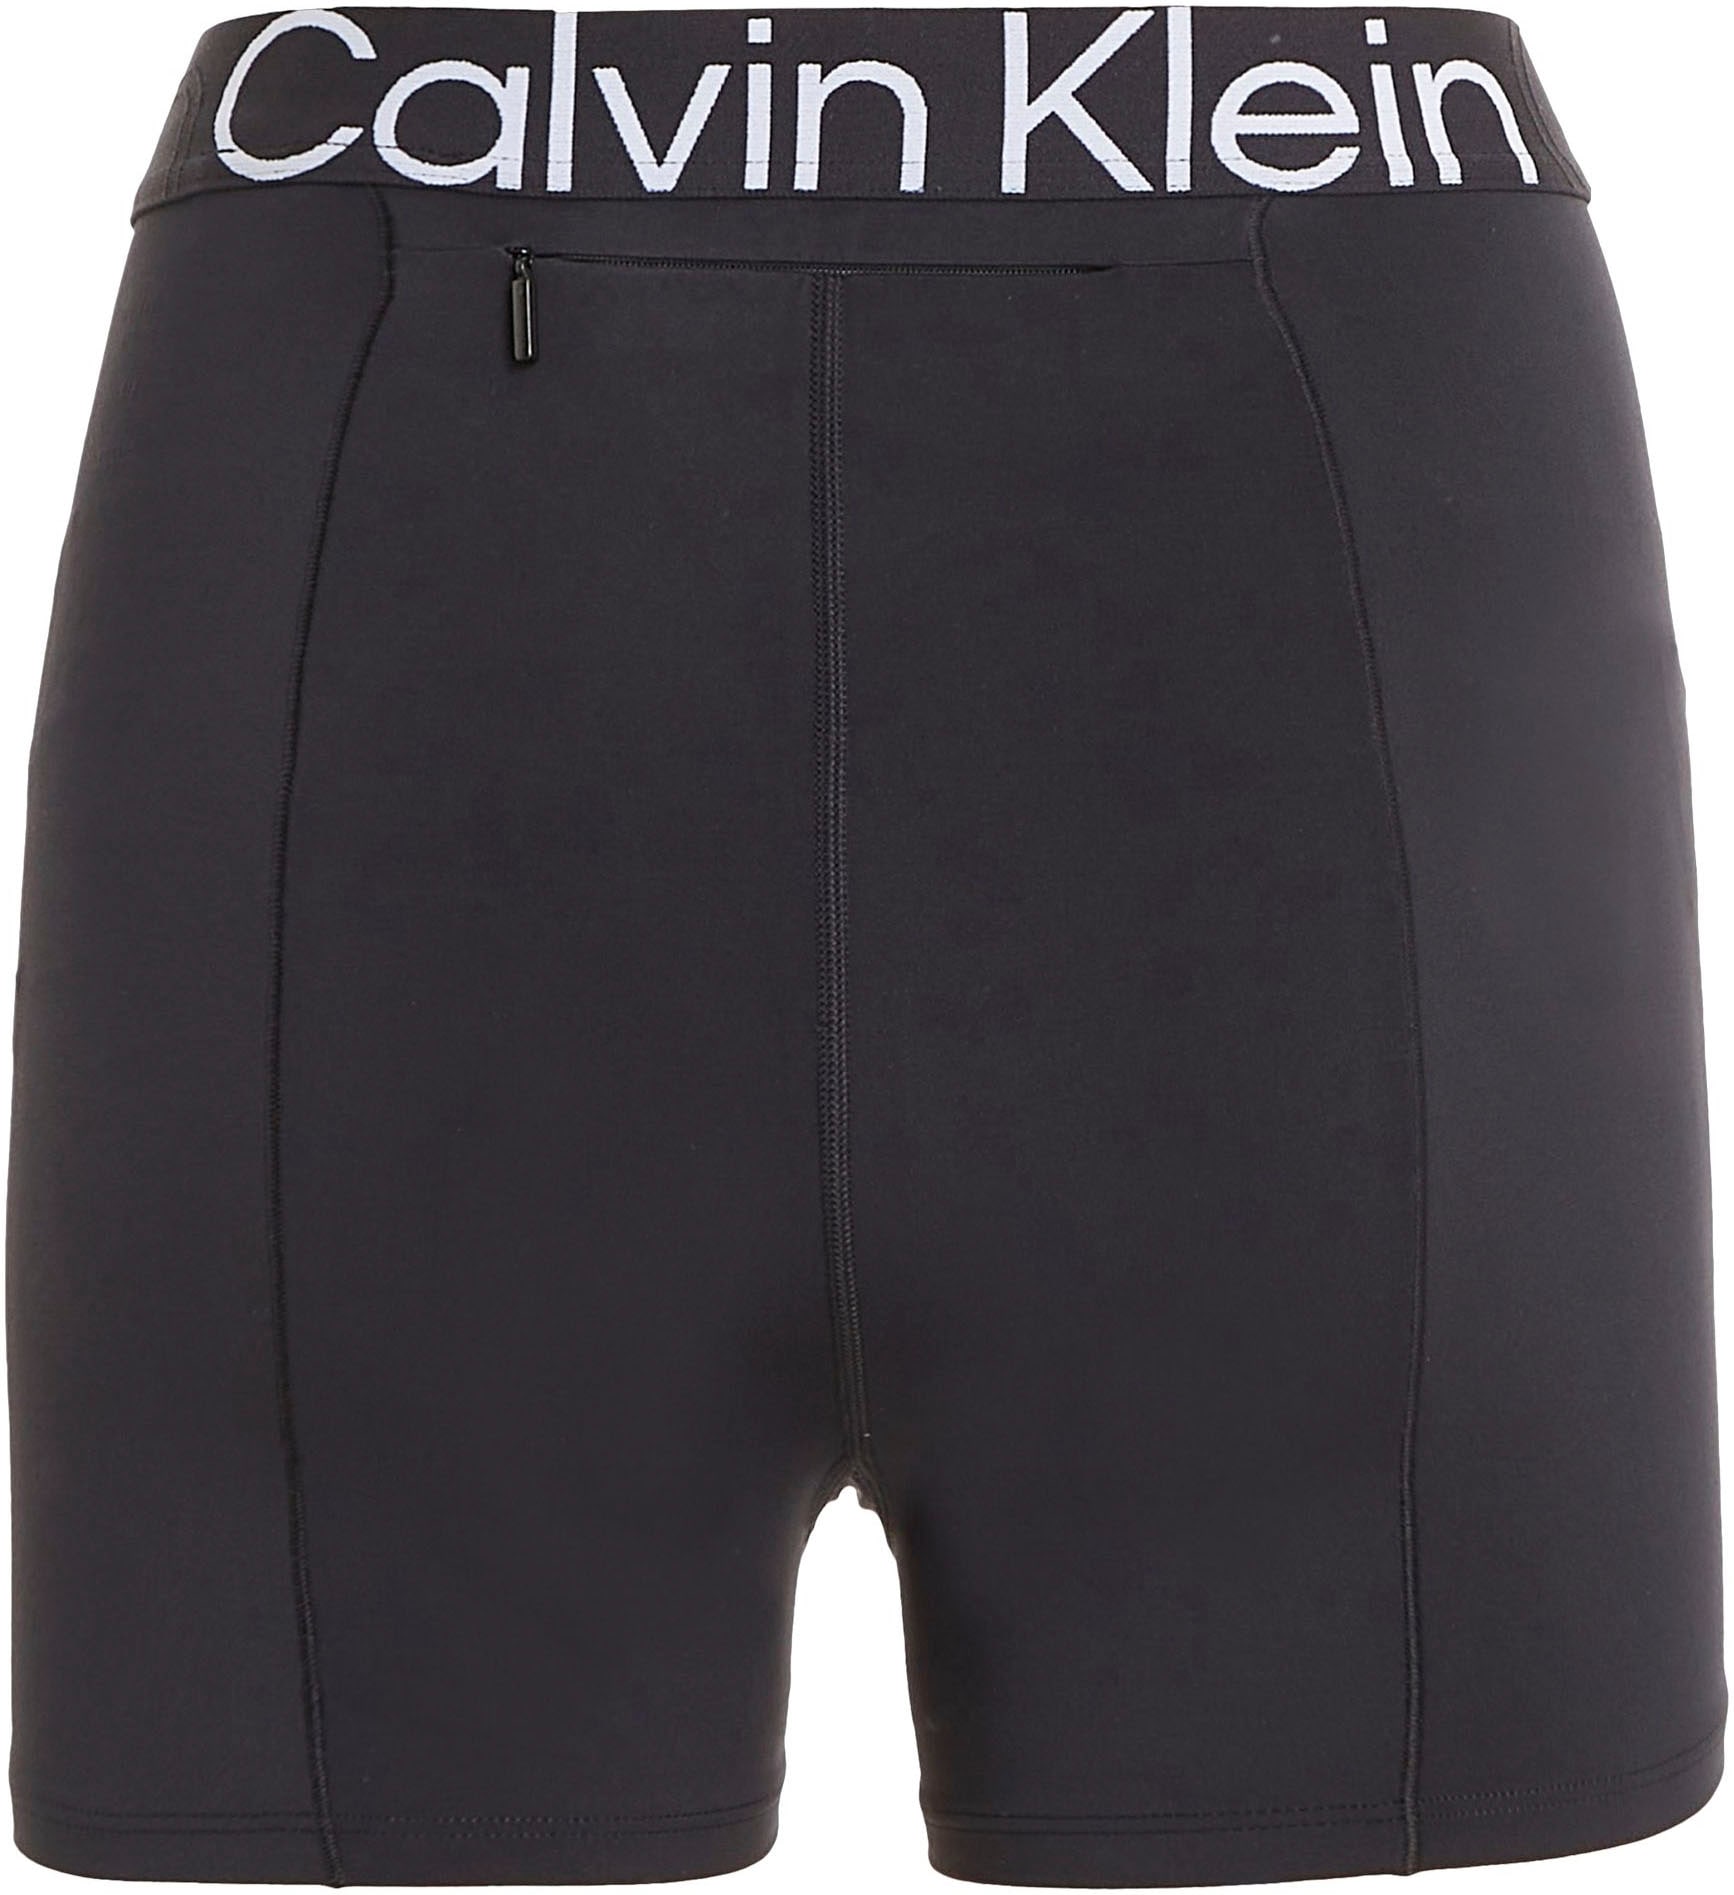 Entdecke Calvin Klein Sport Radlerhose auf